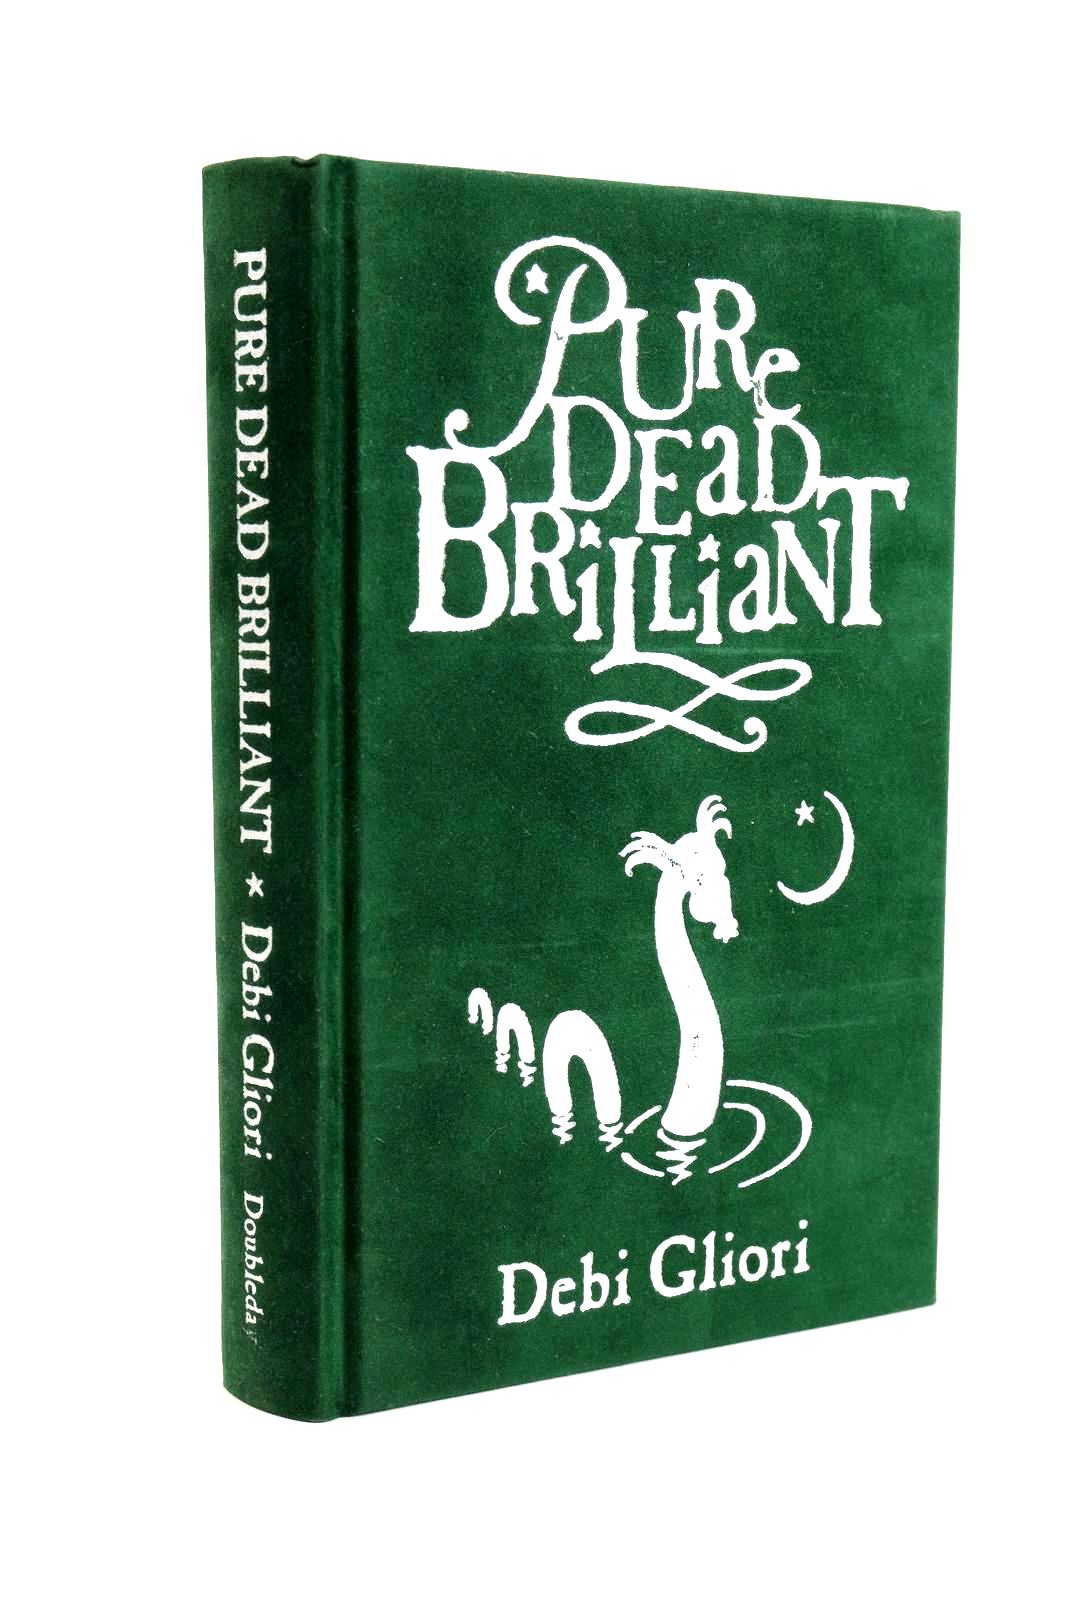 Photo of PURE DEAD BRILLIANT written by Gliori, Debi illustrated by Gliori, Debi published by Doubleday (STOCK CODE: 1323352)  for sale by Stella & Rose's Books